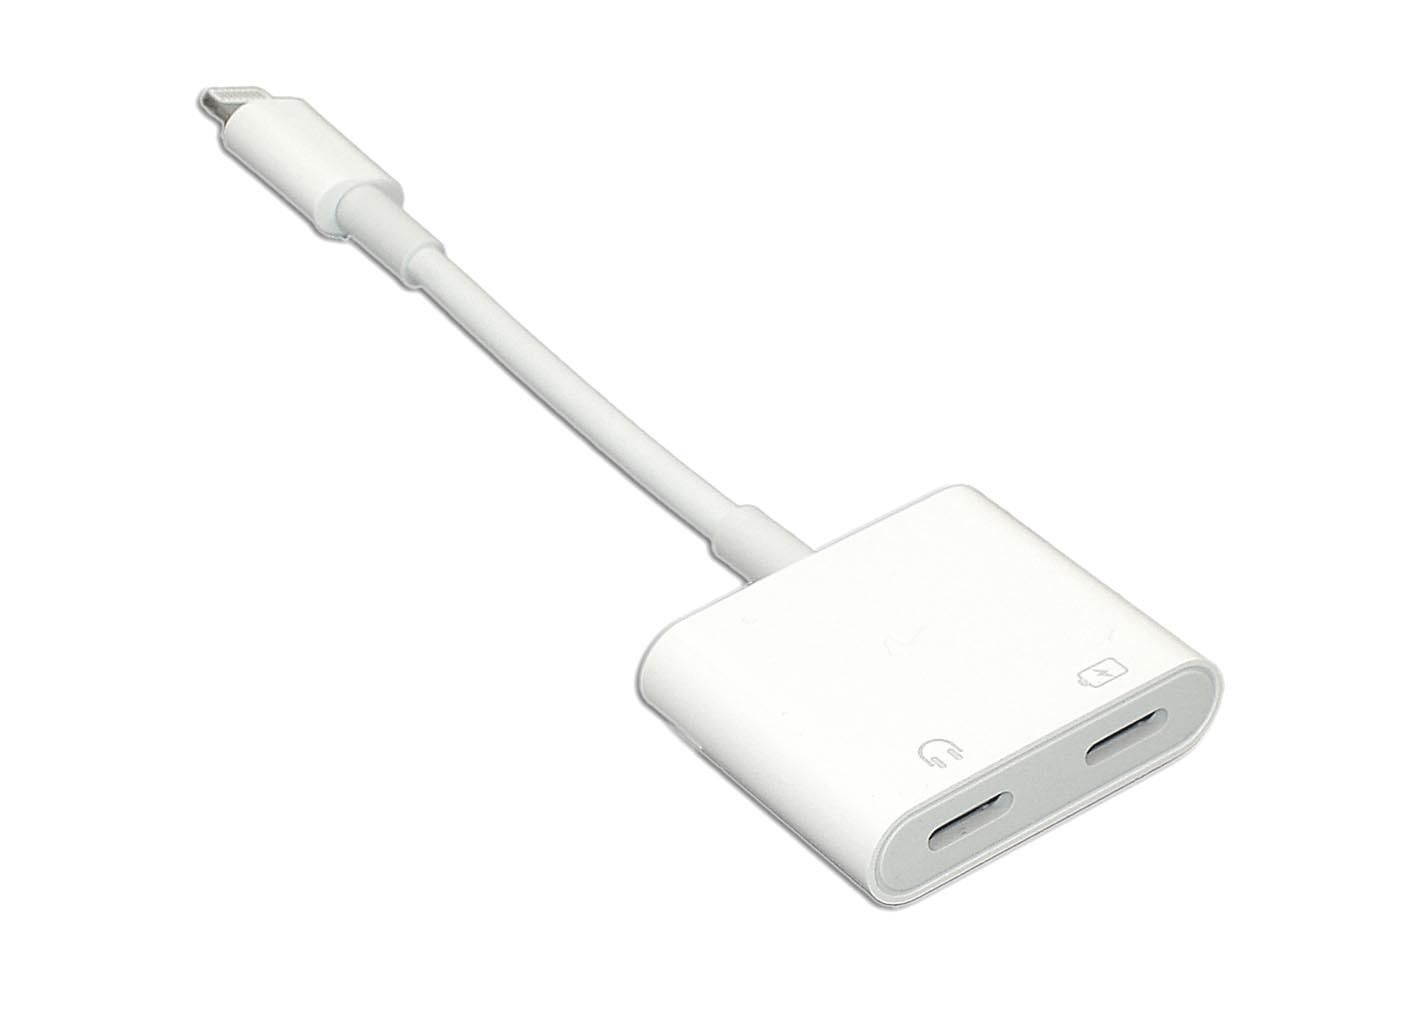 Переходник для подключения телефона. Адаптер Apple md826zm/a. Переходник HDMI Lightning iphone. Переходник для IPOD, iphone, IPAD Apple Lightning Digital av Adapter (md826zm/a). Переходник Lightning HDMI для Apple.